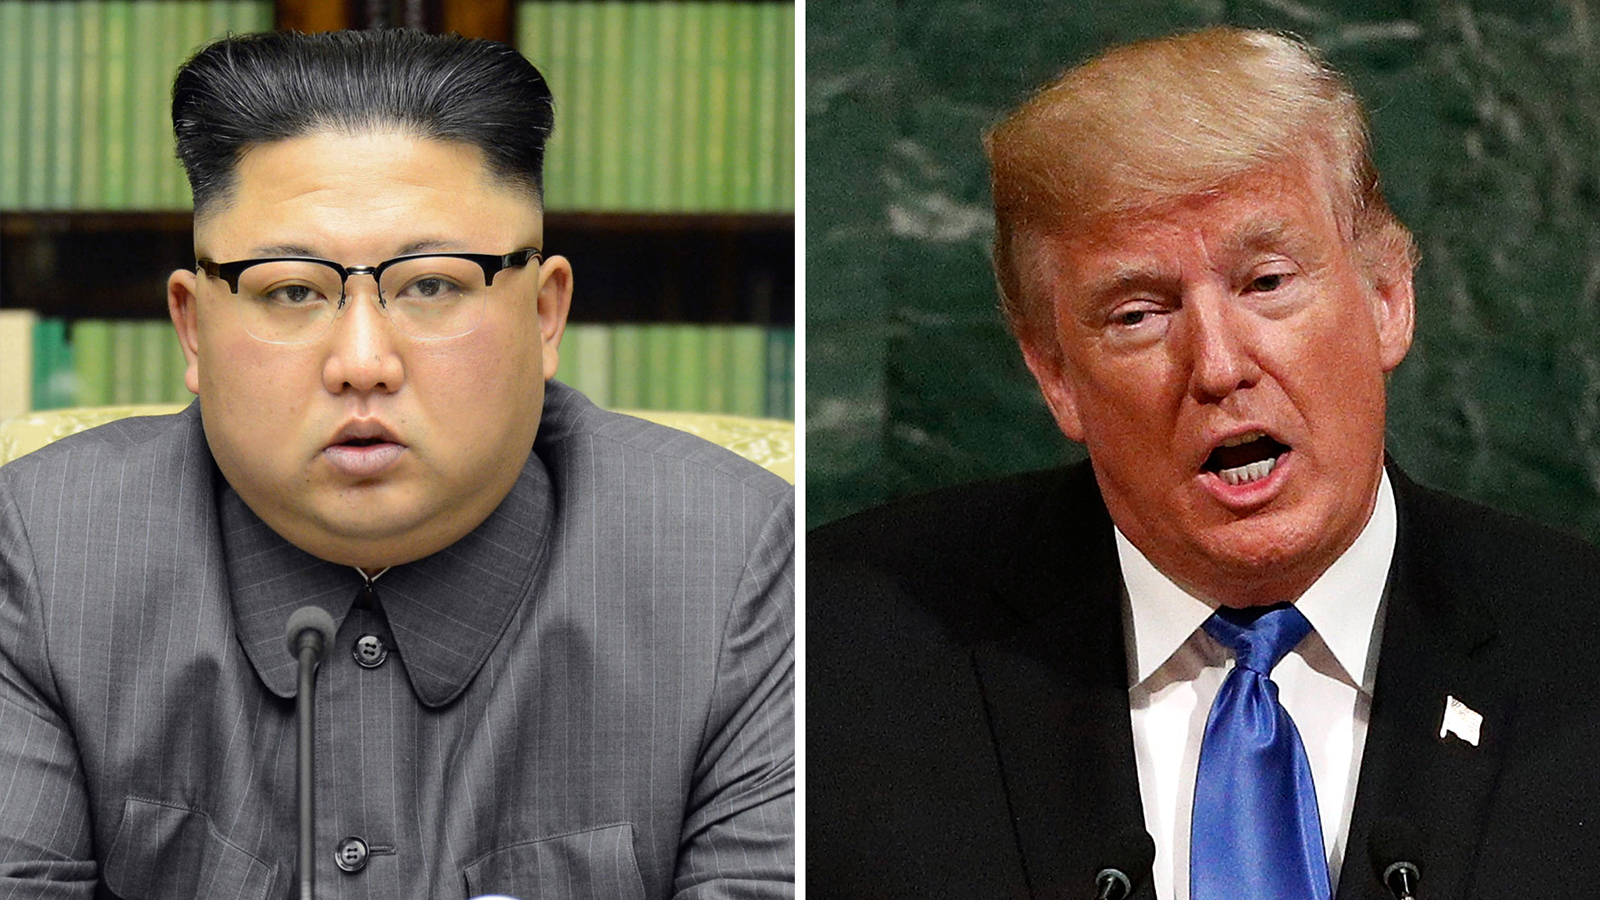 يجب أن يكون البرنامج النووي لكوريا الشمالية على رأس أي أجندة تفاوضية ويعتمد نجاح نهج ترامب تجاه كوريا الشمالية على الجهود الدبلوماسية بعد قمة سنغافورة